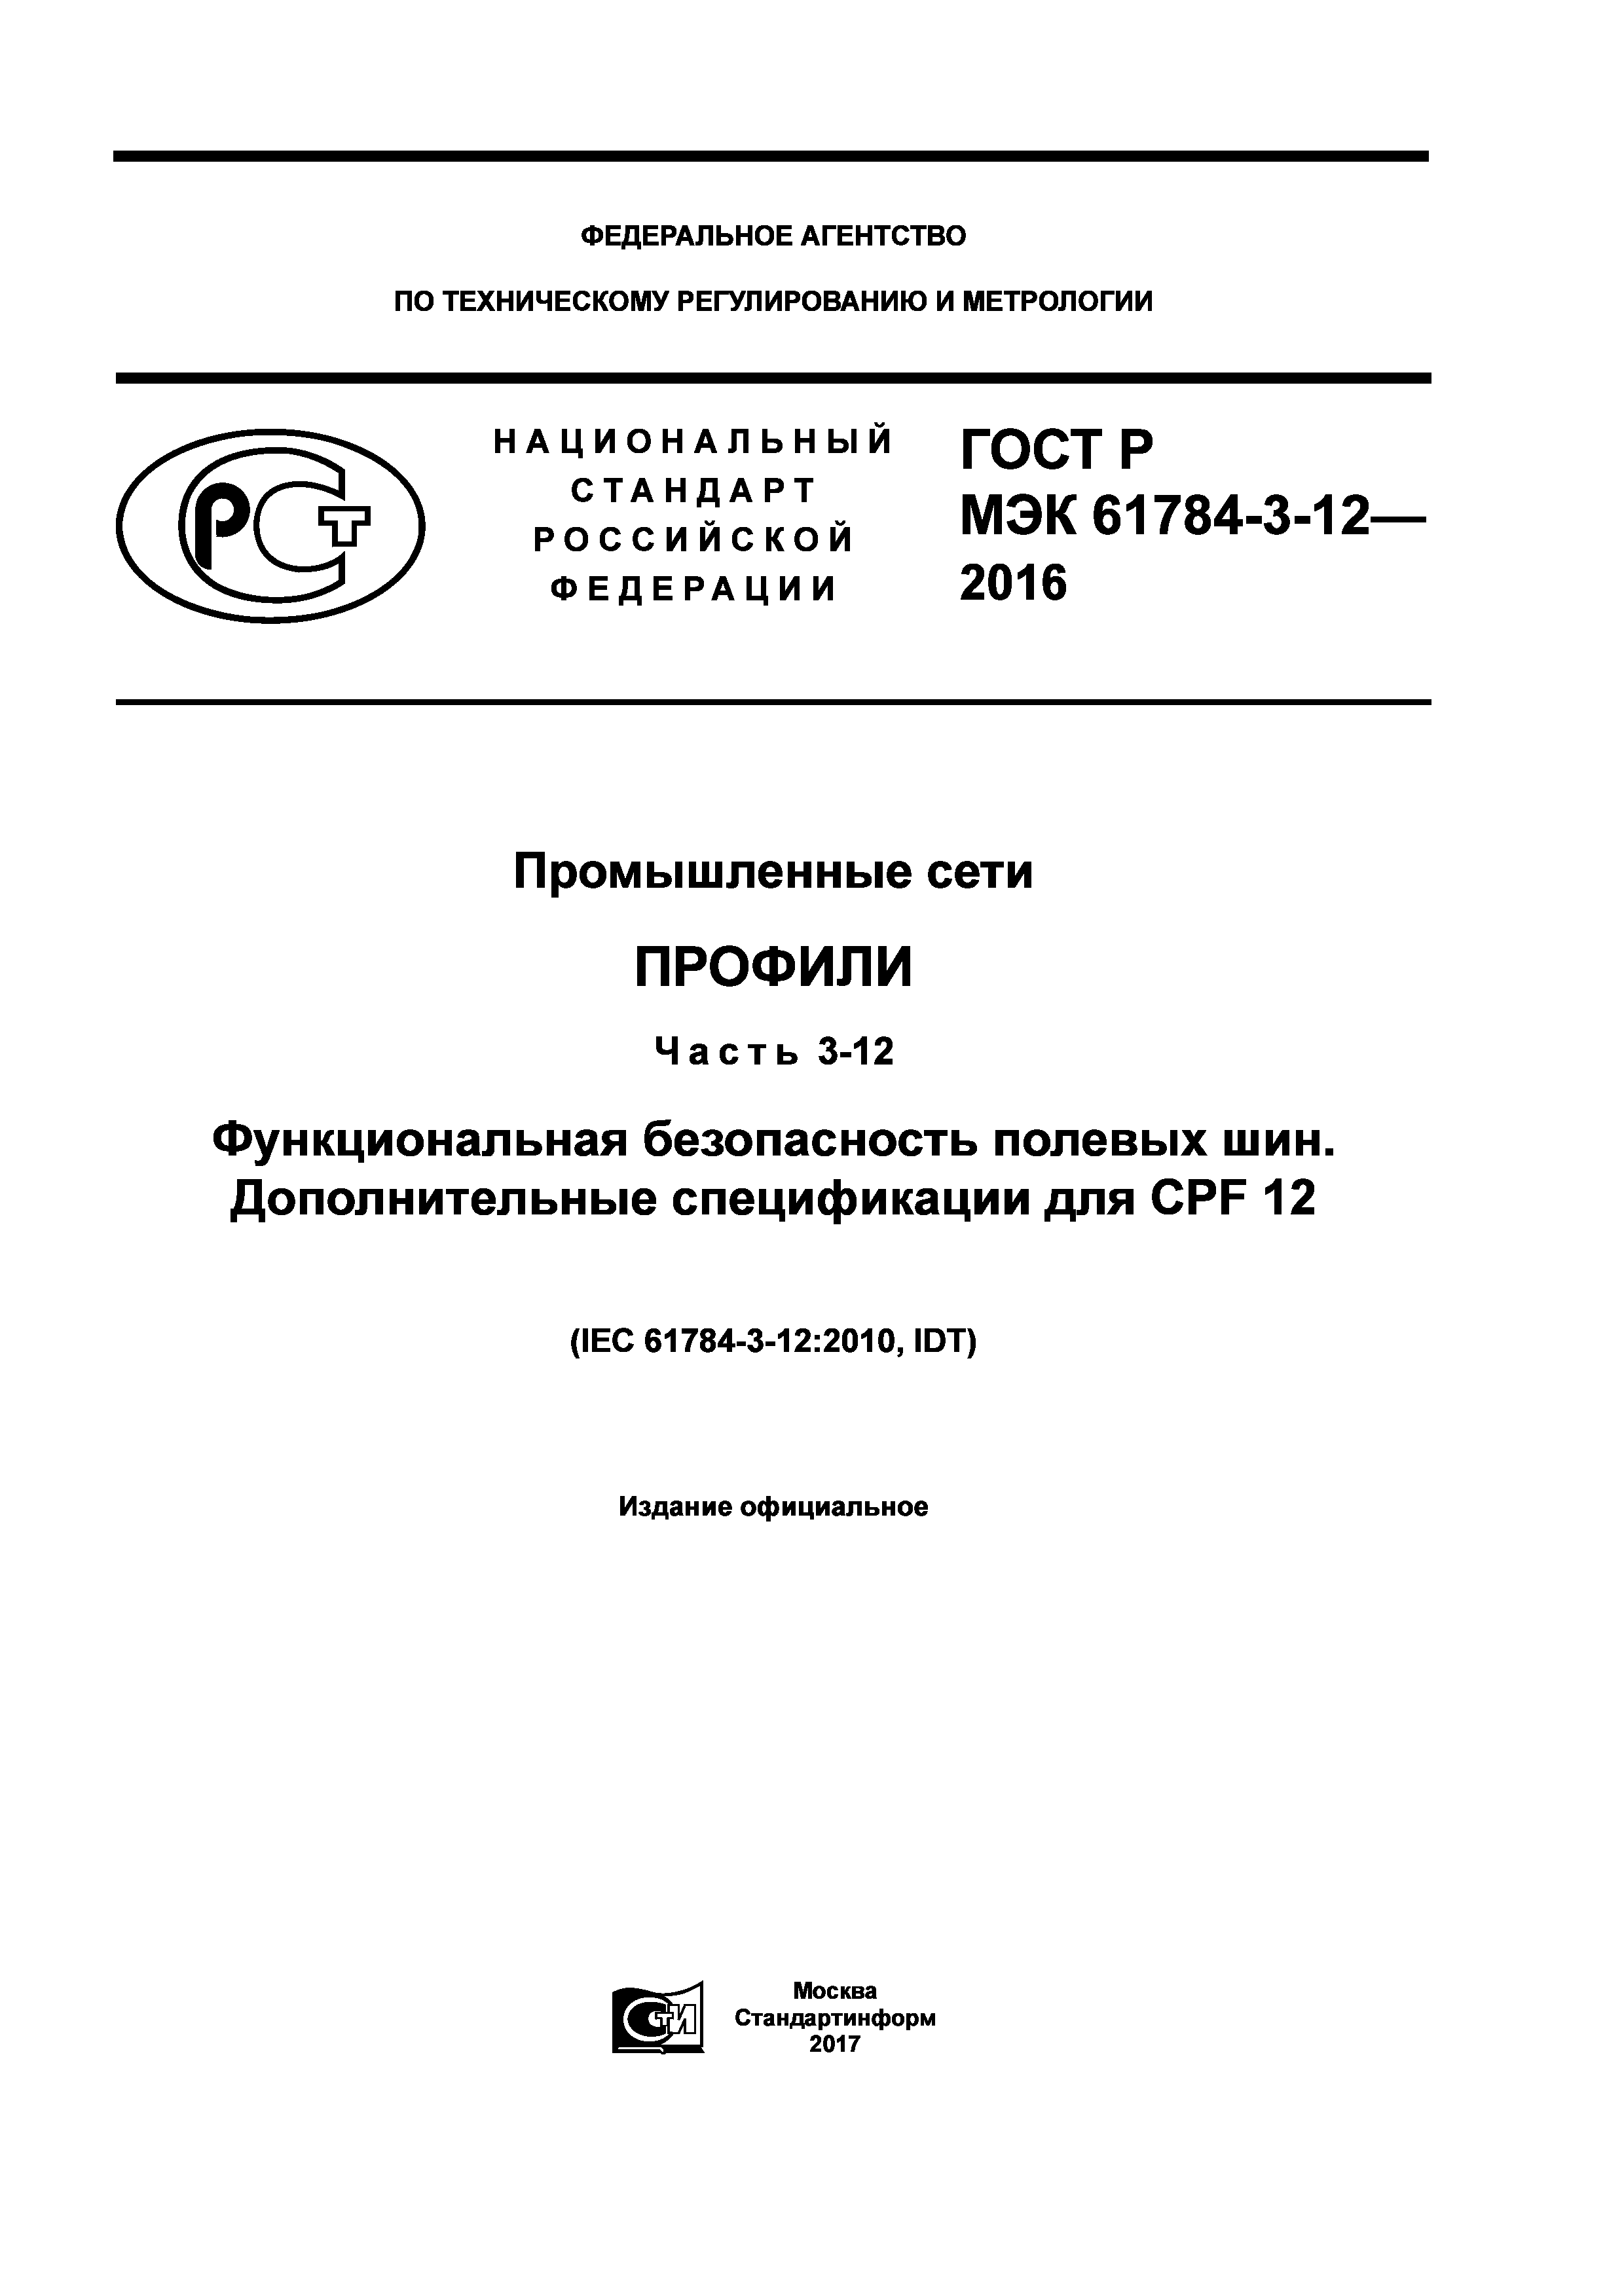 ГОСТ Р МЭК 61784-3-12-2016